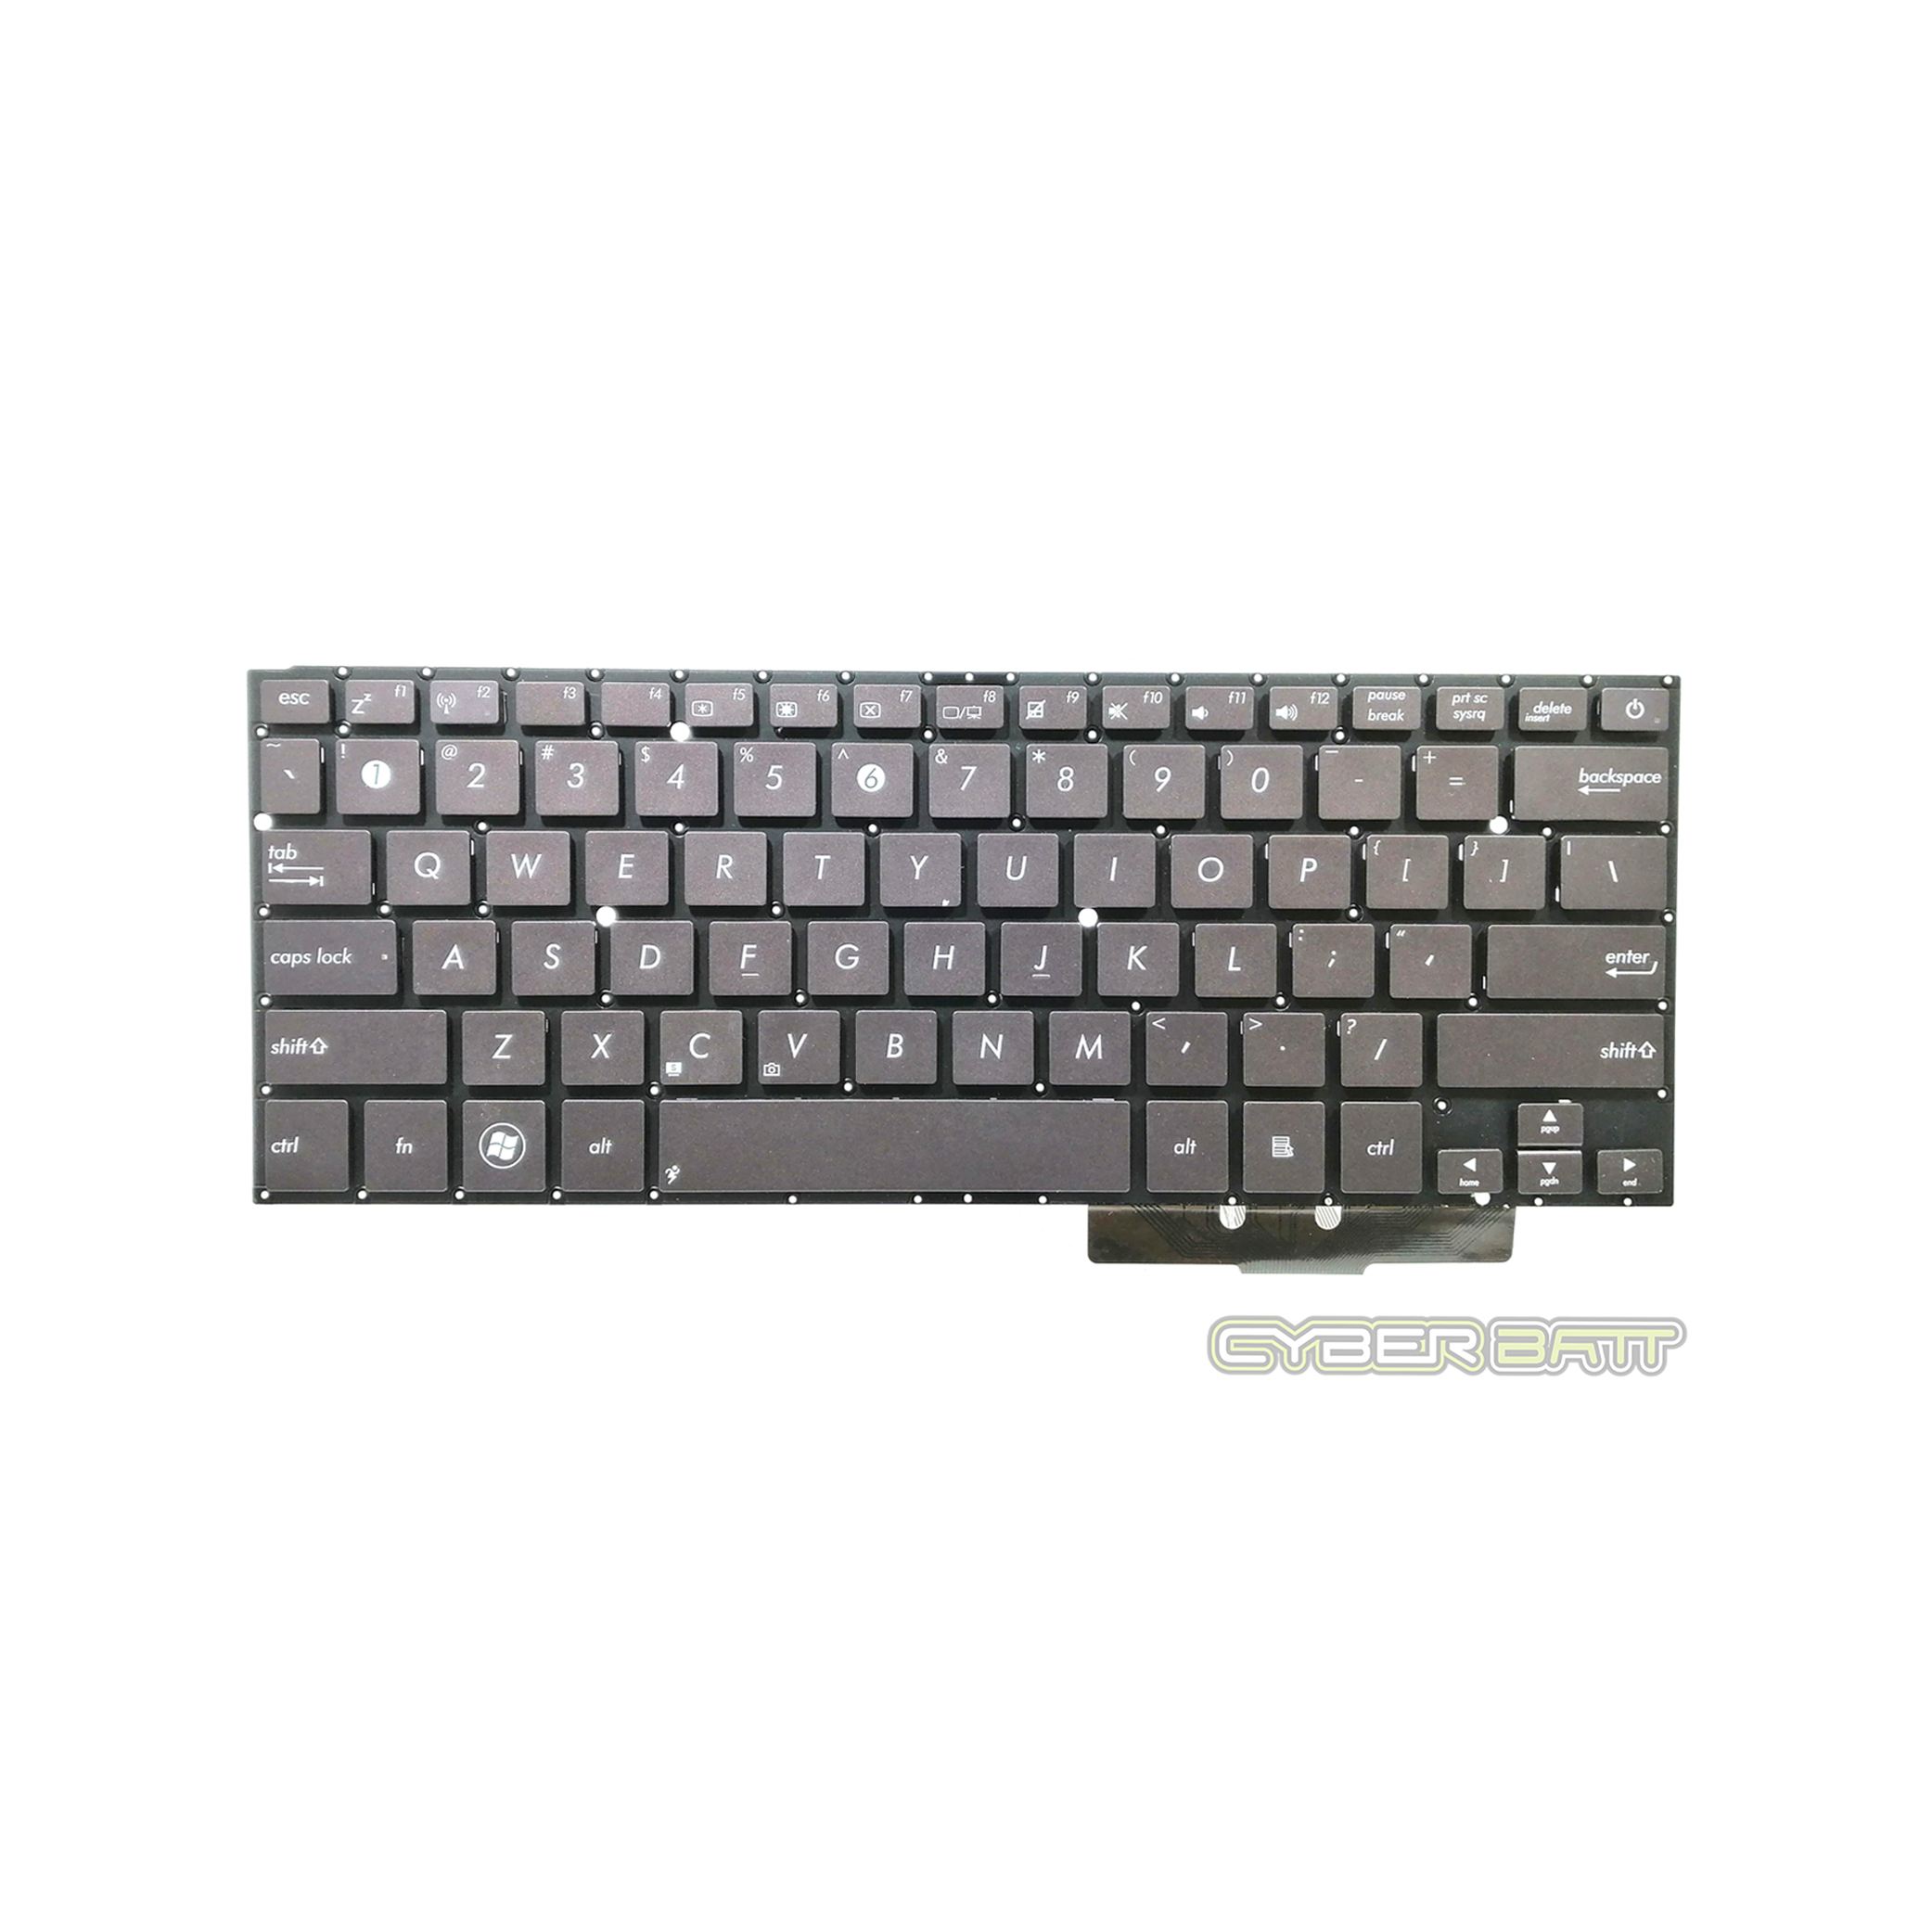 Keyboard Asus Zenbook UX31 US (Black Brown)